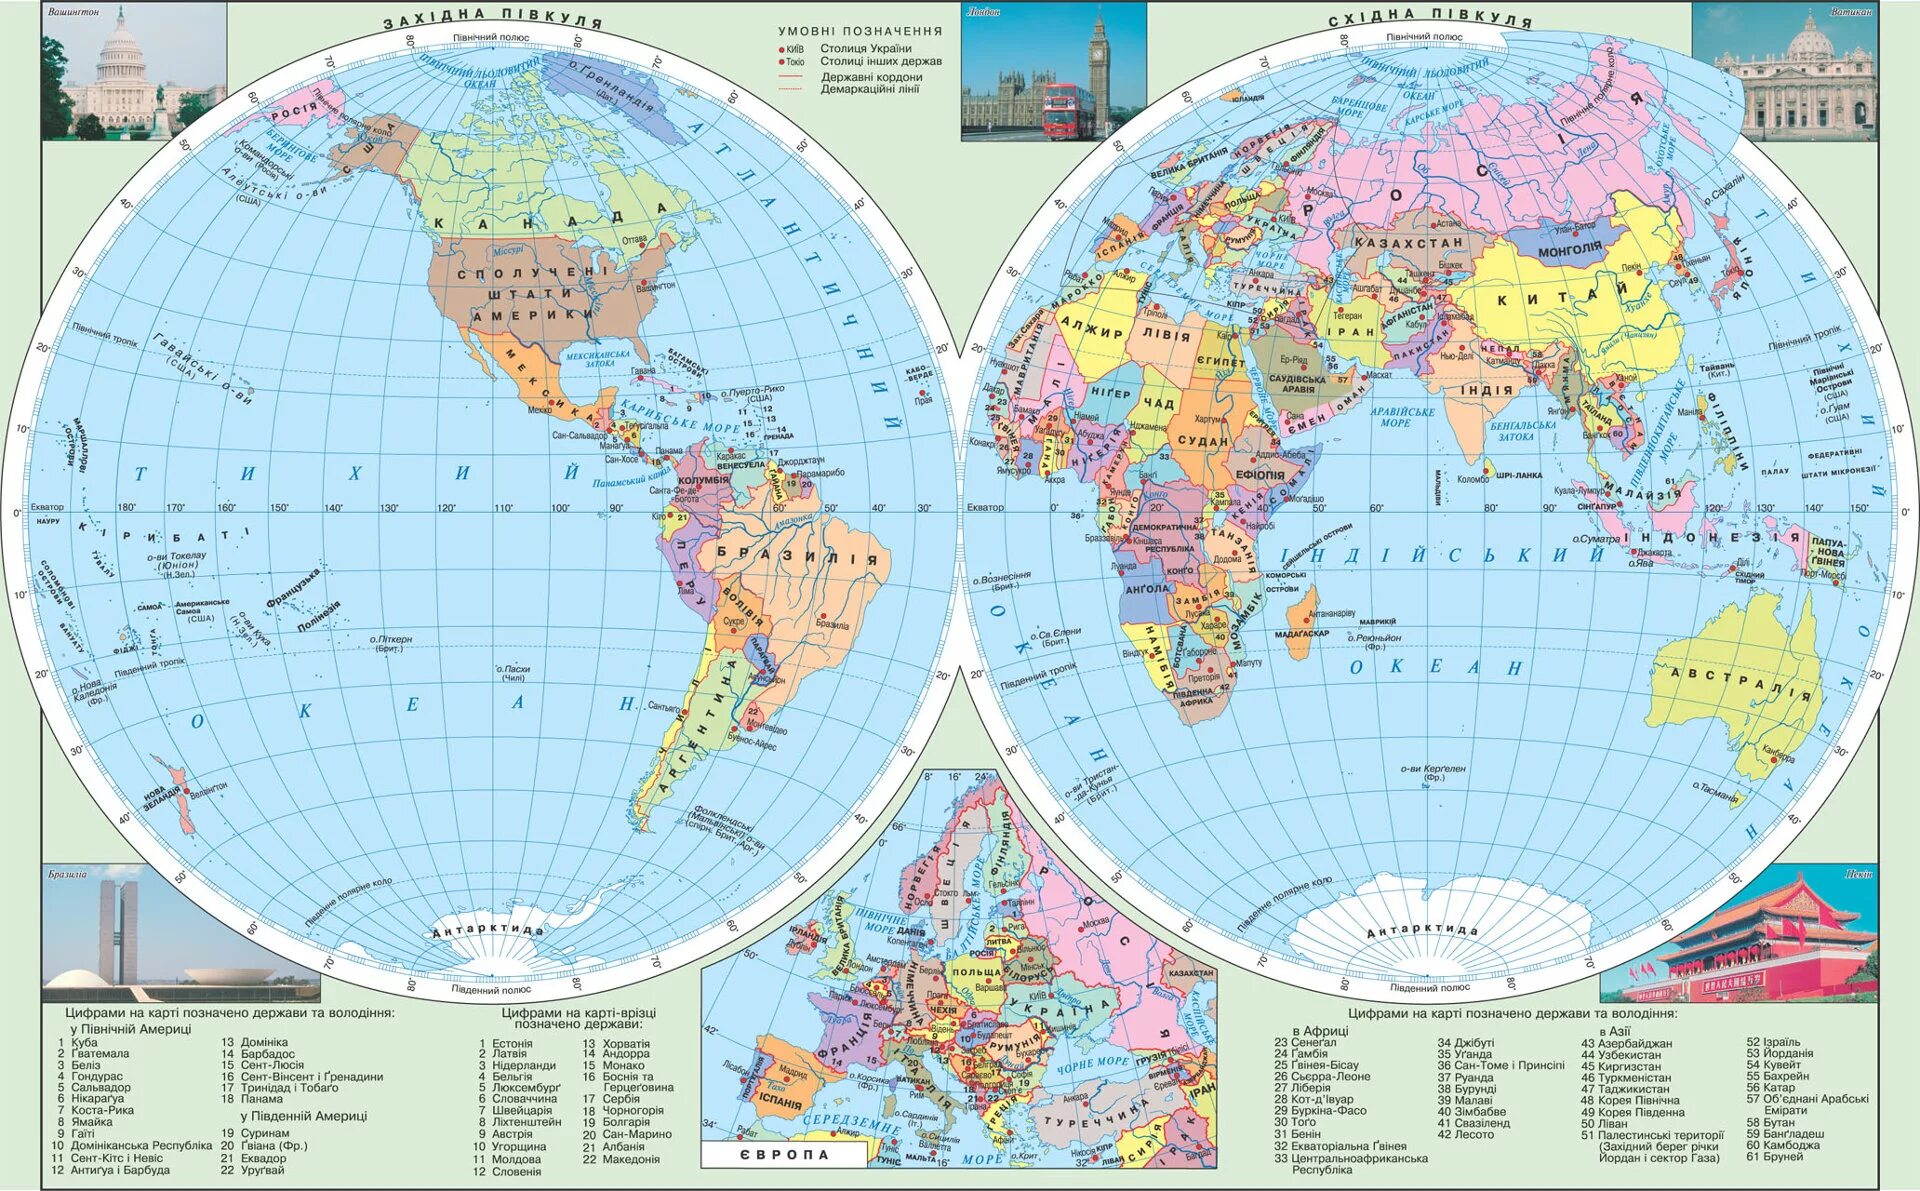 Карта 10 градусов северной широты. География 5 класс карта полушарий политическая карта. Карта Западного полушария земли со странами. Карта полушарий политическая карта по географии 5.